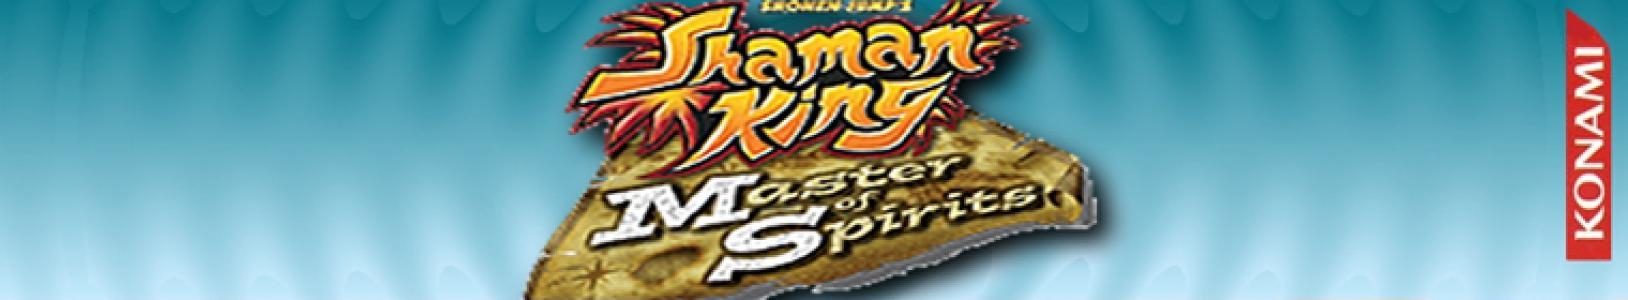 Shaman King: Master of Spirits banner